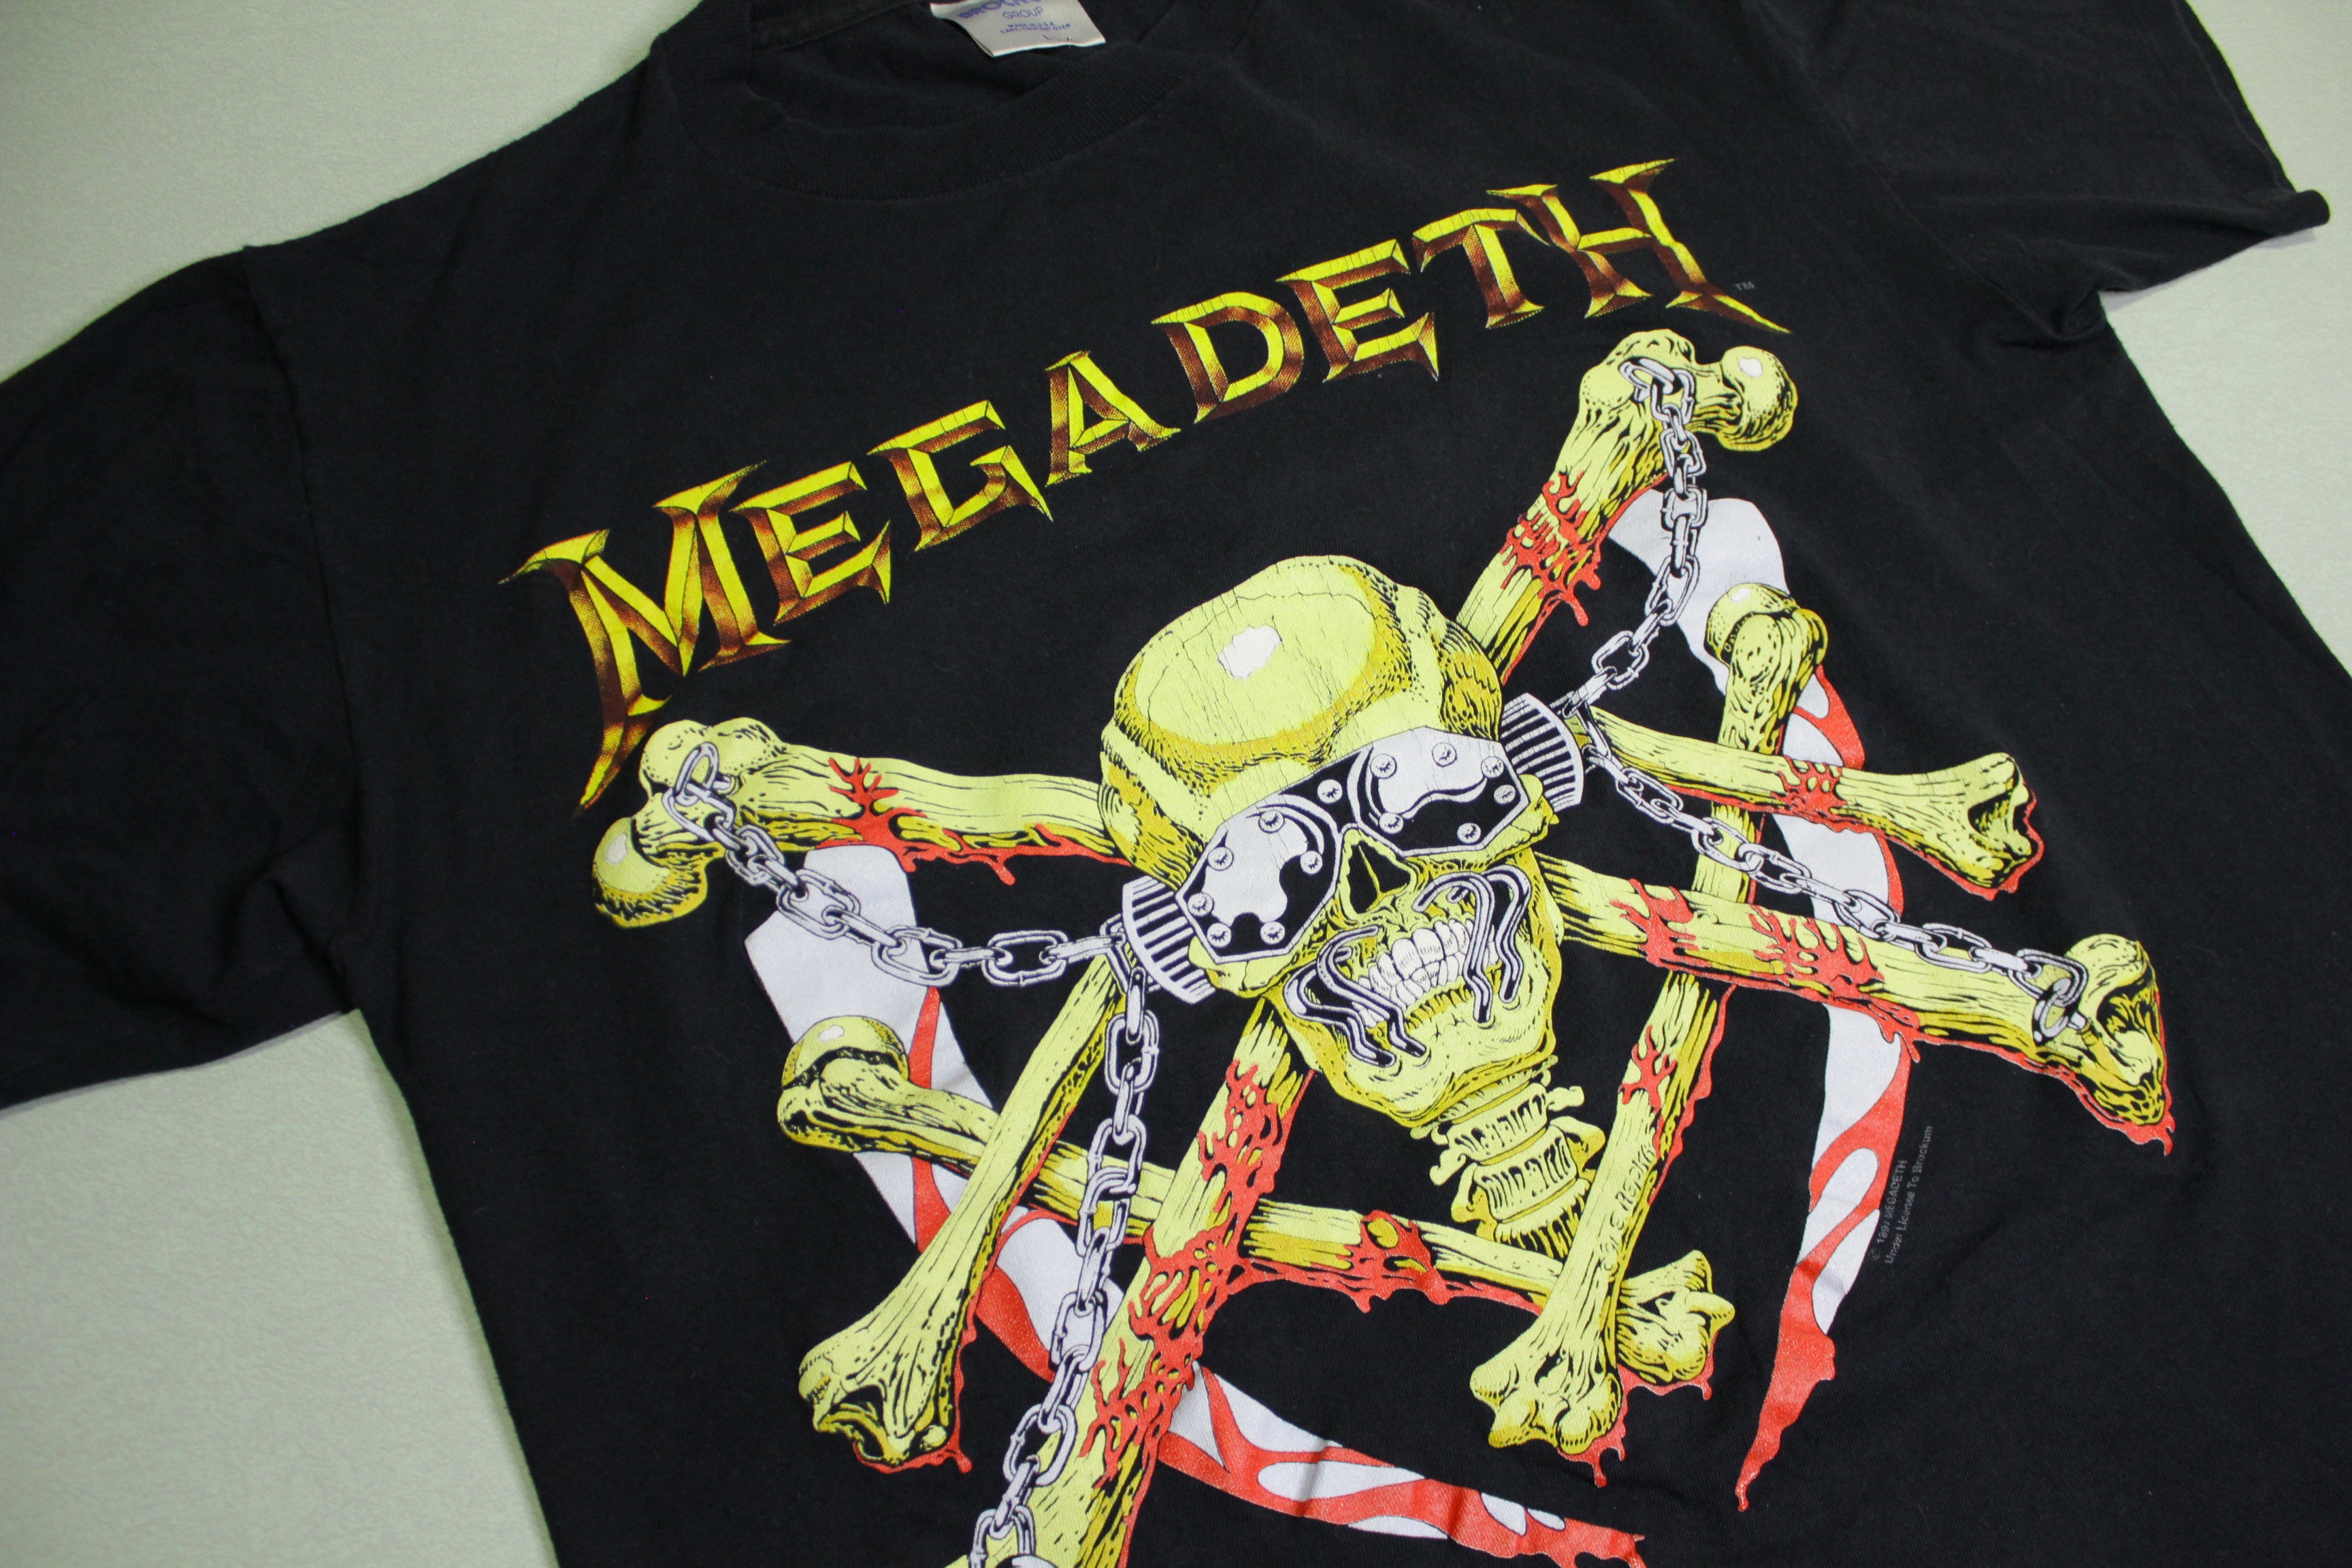 激レア USA製 MEGADETH 1991年製 ヴィンテージTシャツ Lサイズ - トップス